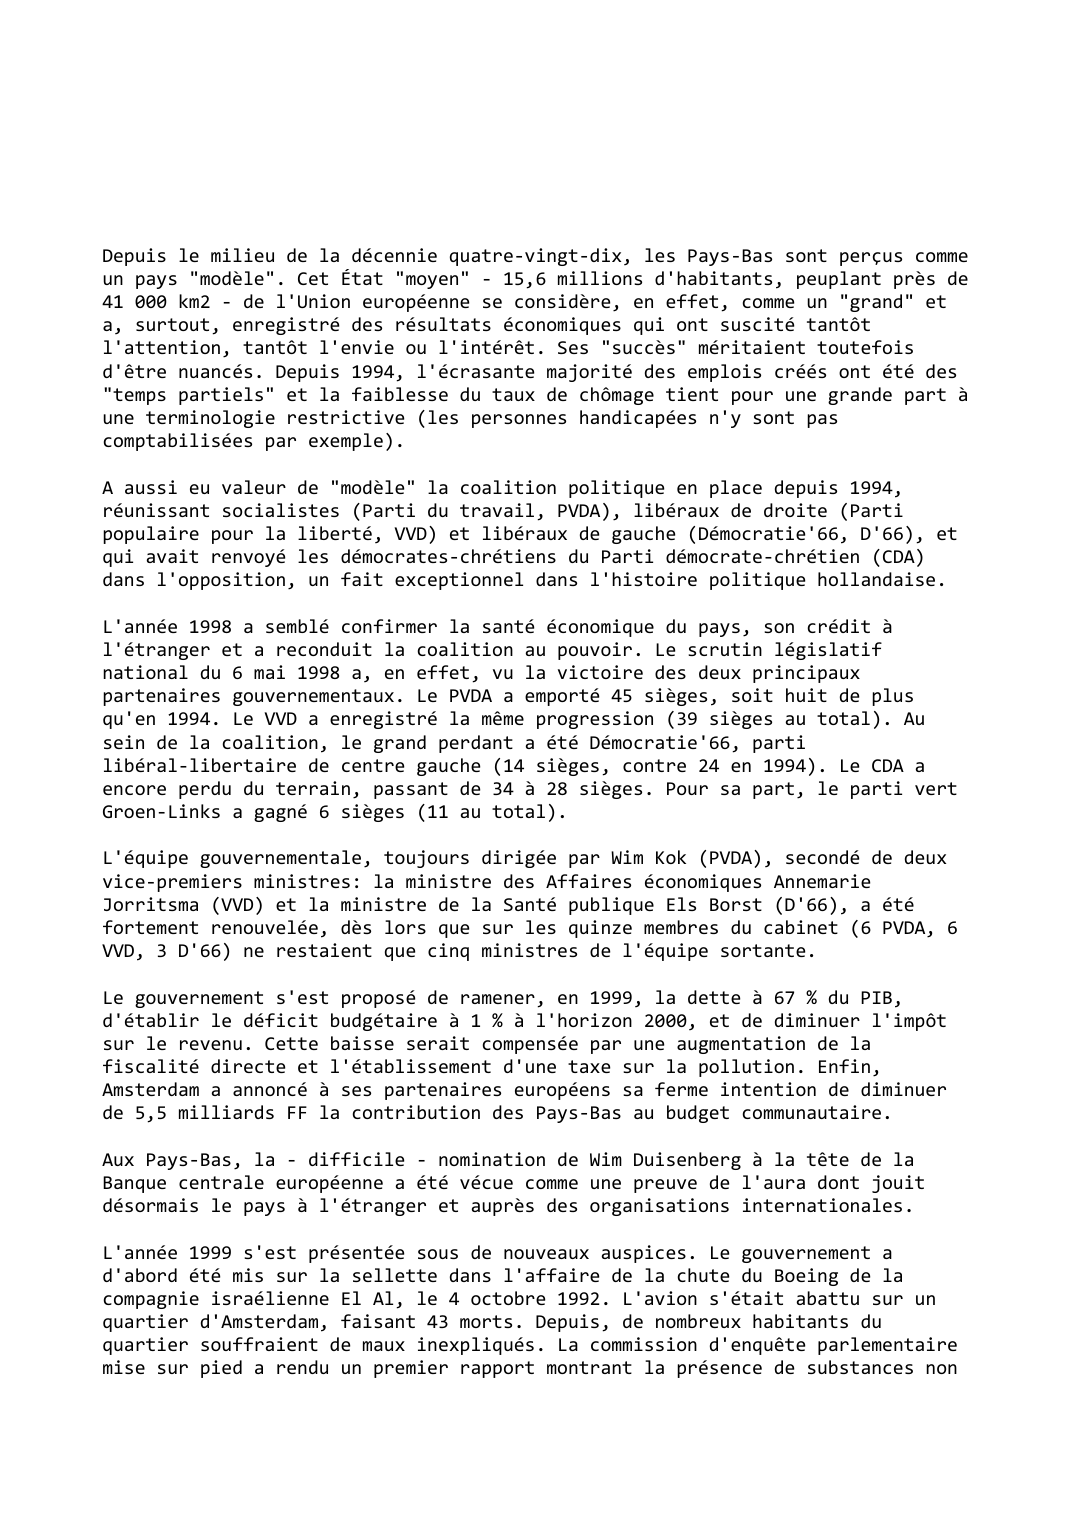 Prévisualisation du document Pays-Bas (1998-1999): Les grippages du "modèle hollandais"